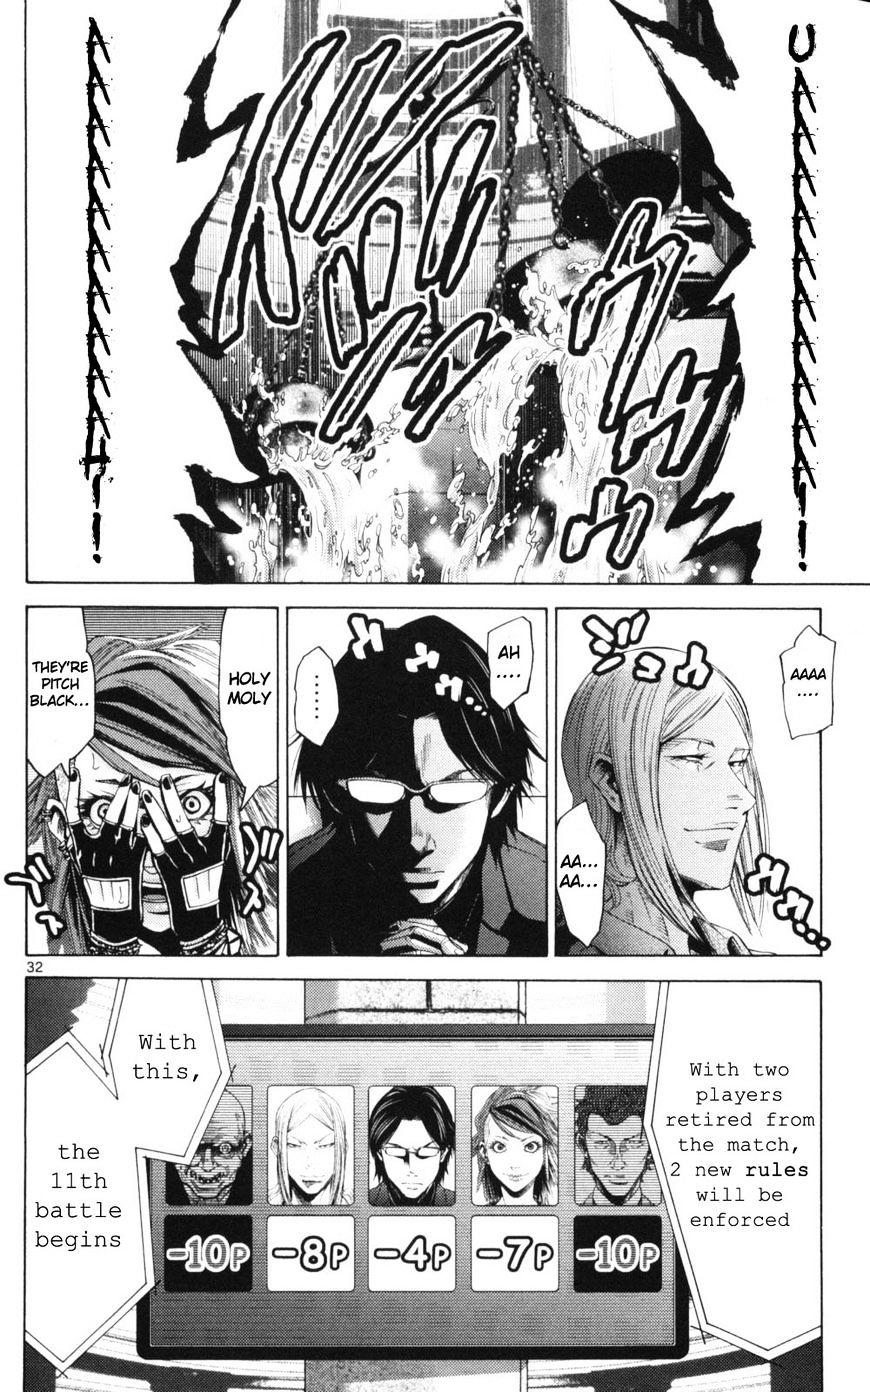 Imawa No Kuni No Alice Chapter 51.2 : Side Story 6 - King Of Diamonds (2) page 32 - Mangakakalot